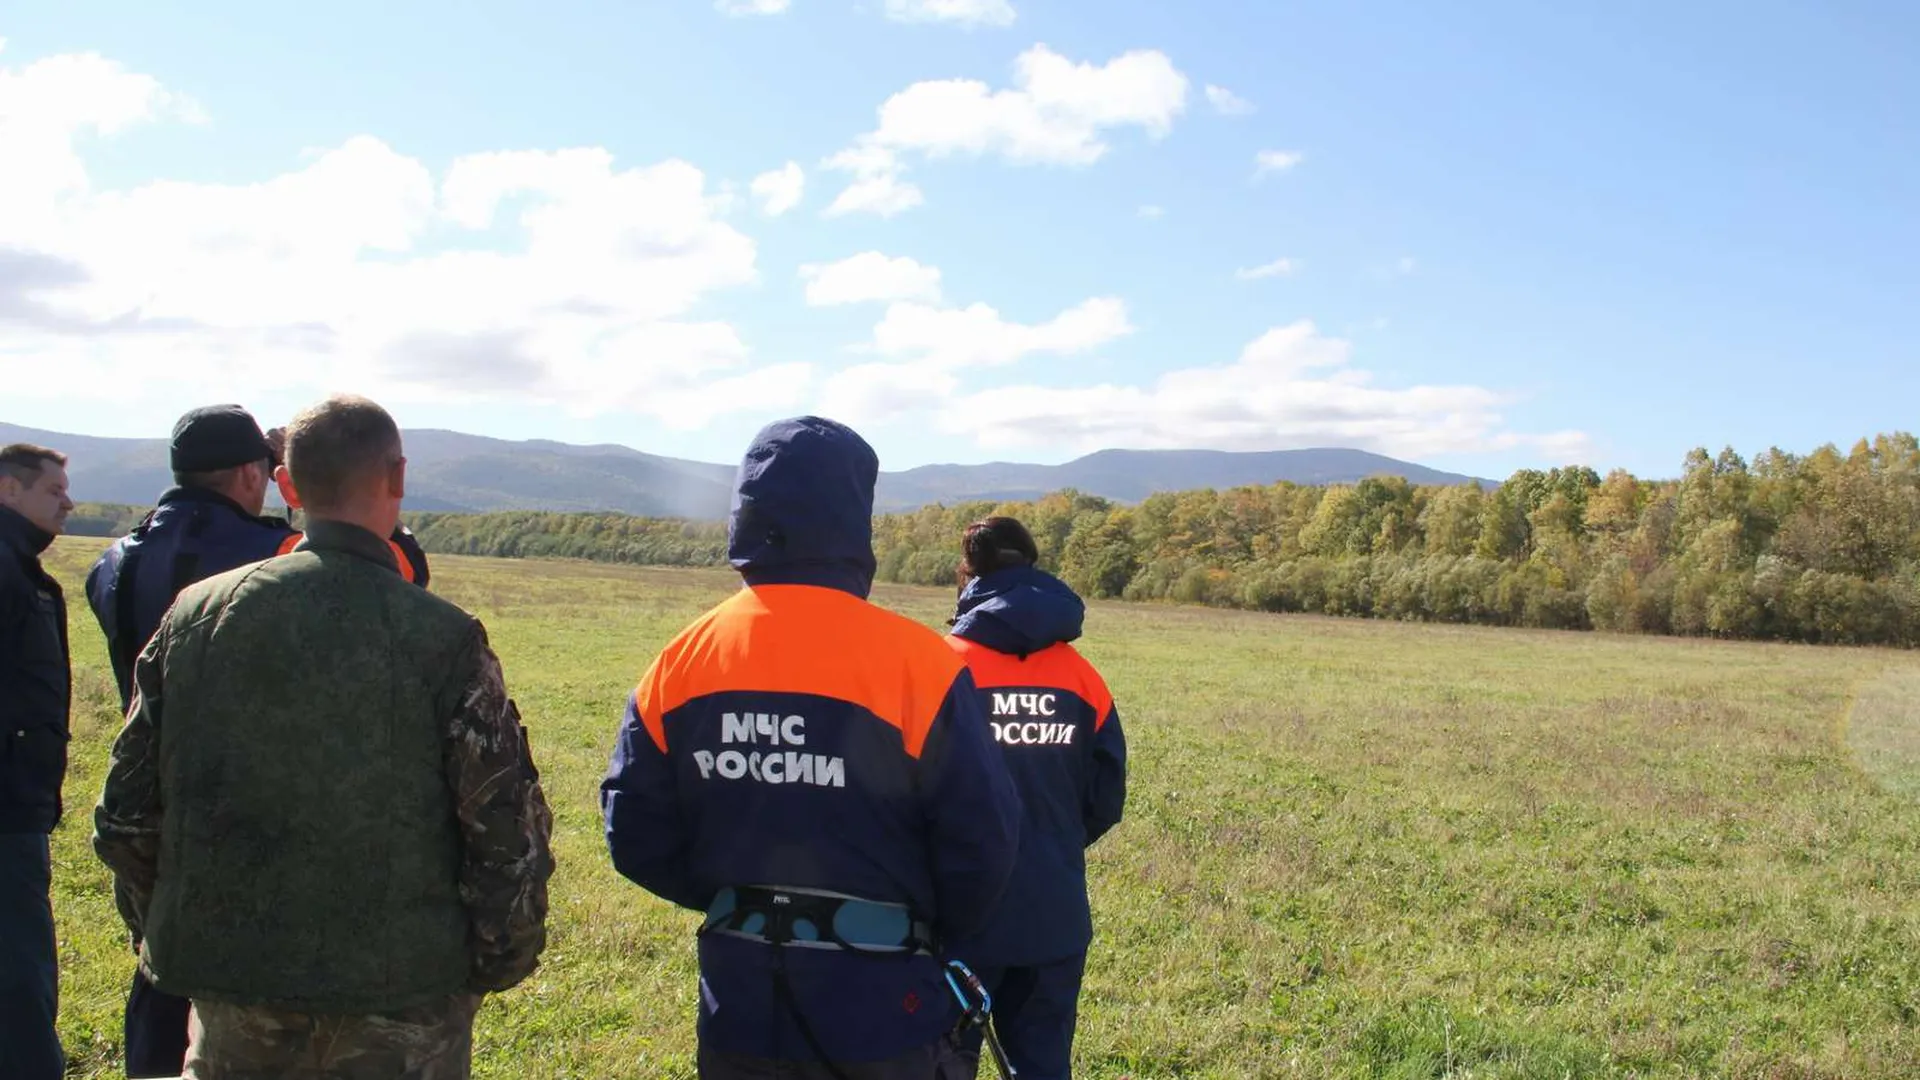 Останки погибших пилотов Ан-26 нашли на месте крушения под Хабаровском — СМИ